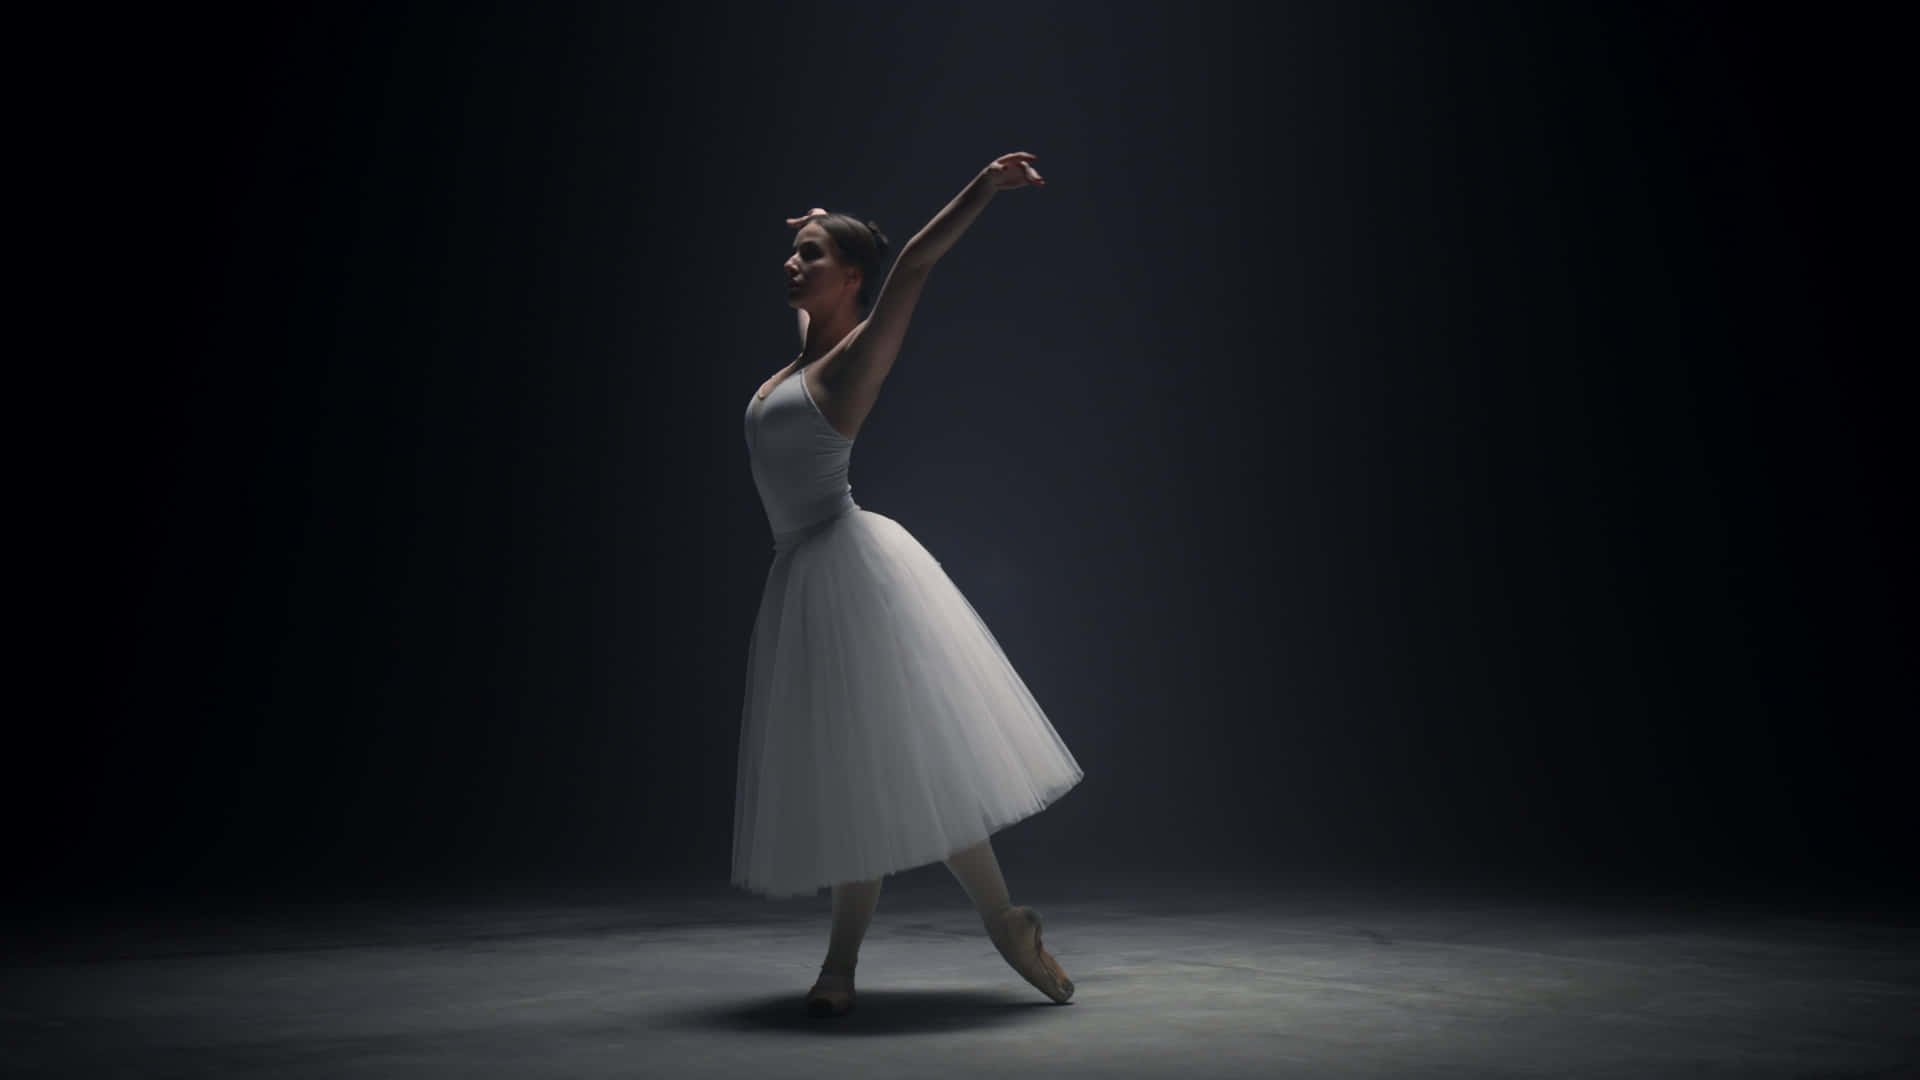 A Ballerina Is Dancing In The Dark